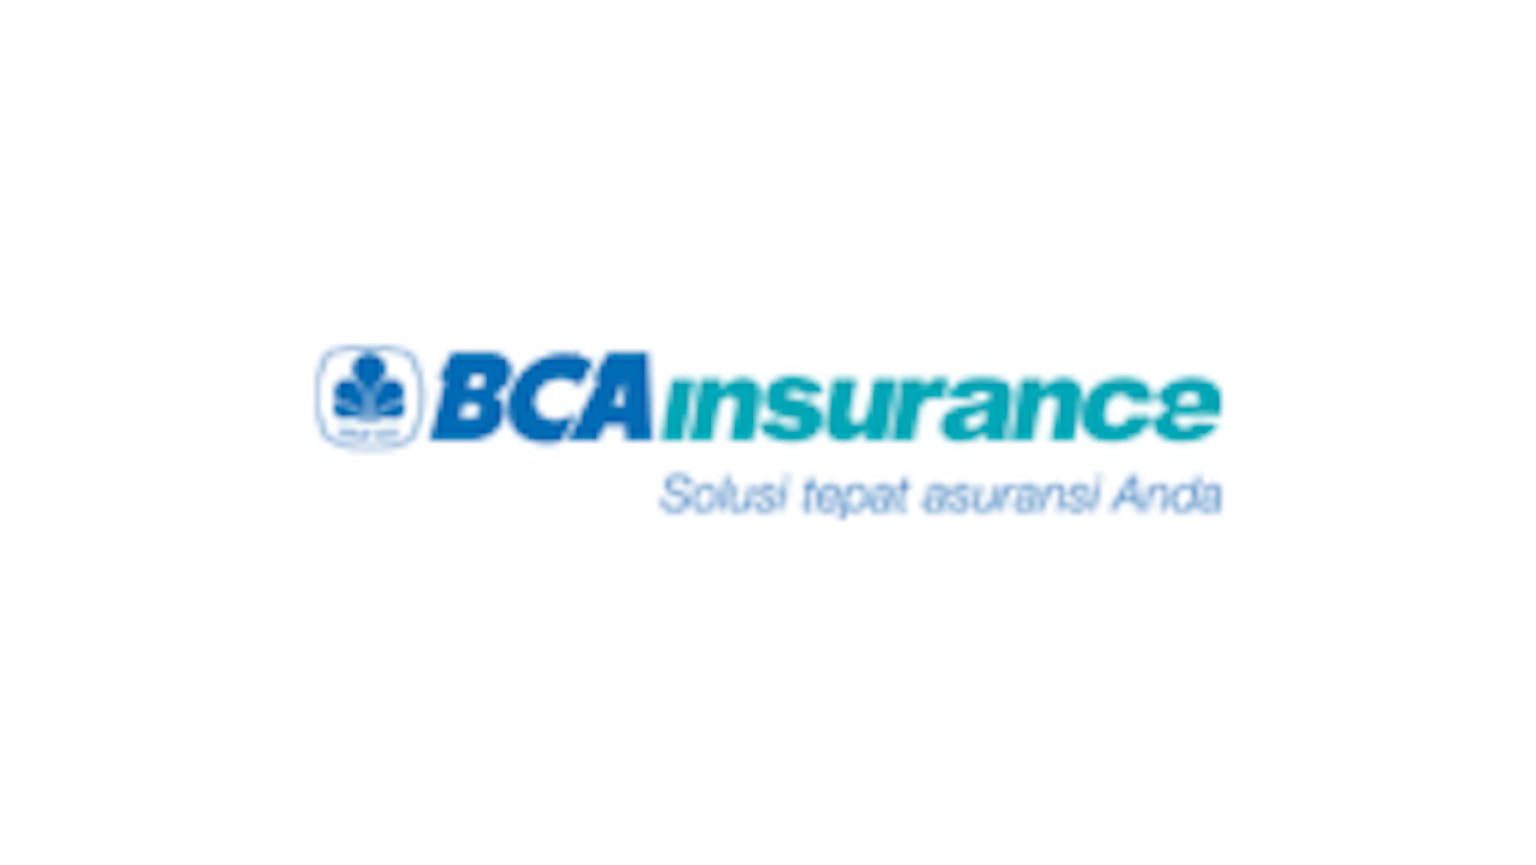 BCAinsurance